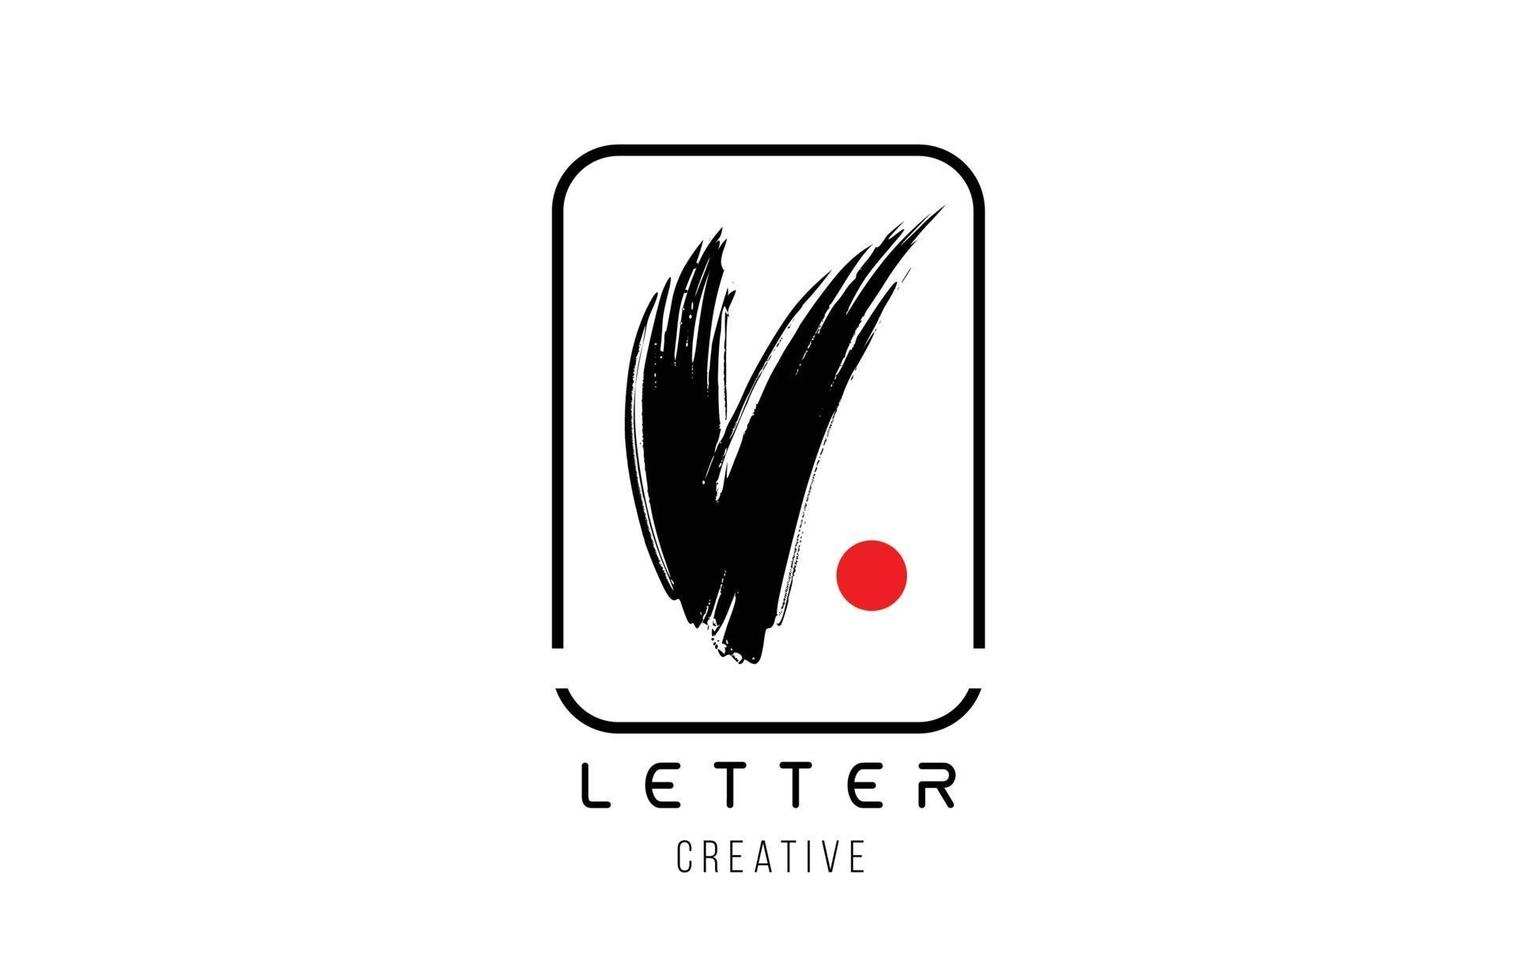 letra do alfabeto v grunge design de escova suja para o ícone do logotipo da empresa vetor